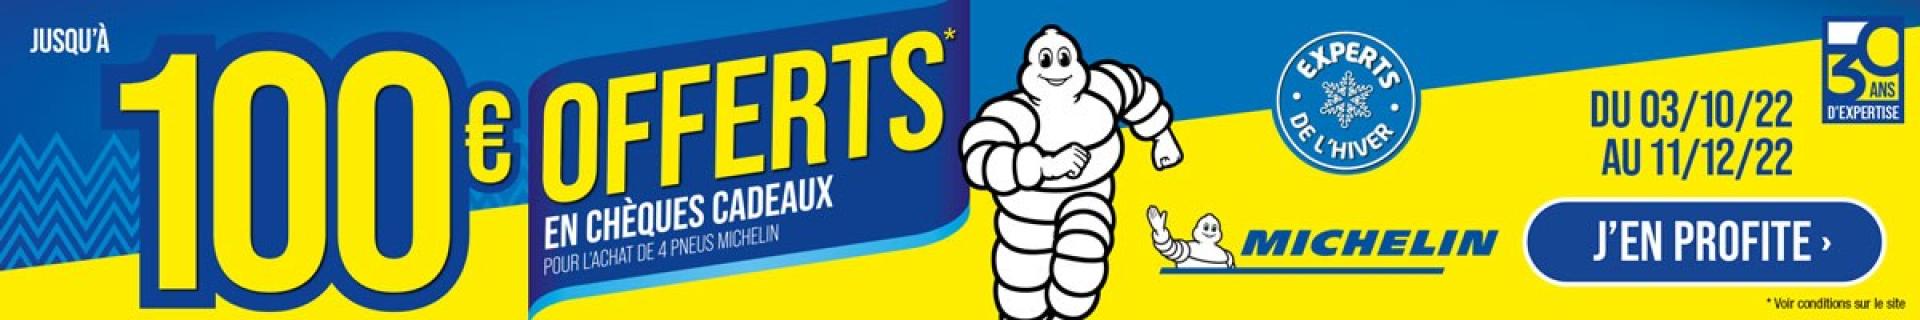 Jusqu'à 100€ offerts en chèques cadeaux pour l'achat de 4 pneus Michelin